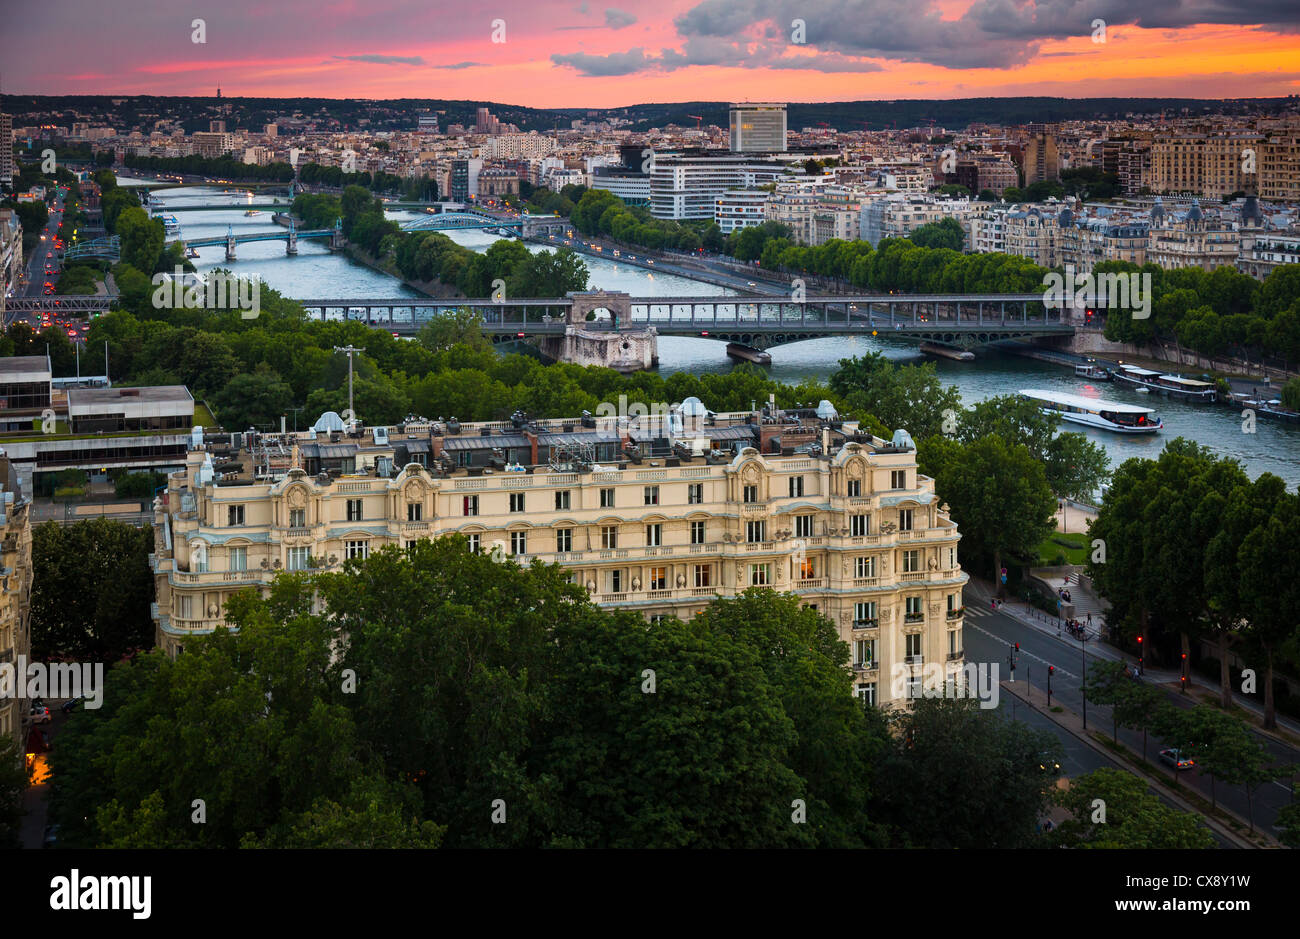 El río Sena y algunos de los muchos puentes que cruza, ya que serpentea a través de París, Francia Foto de stock